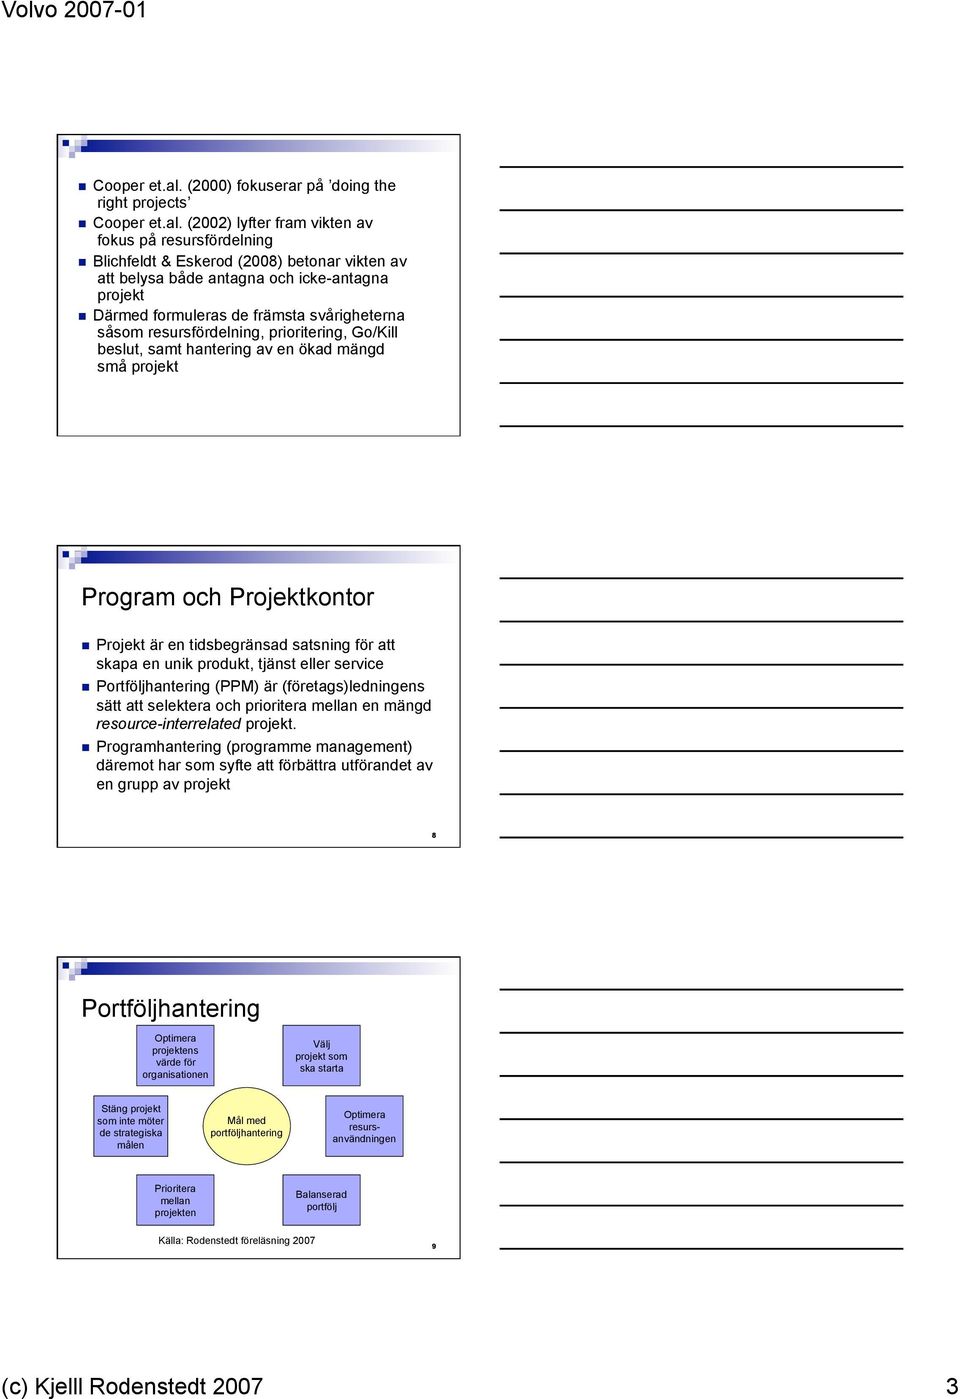 Teorier kring program och projektkontor - PDF Free Download